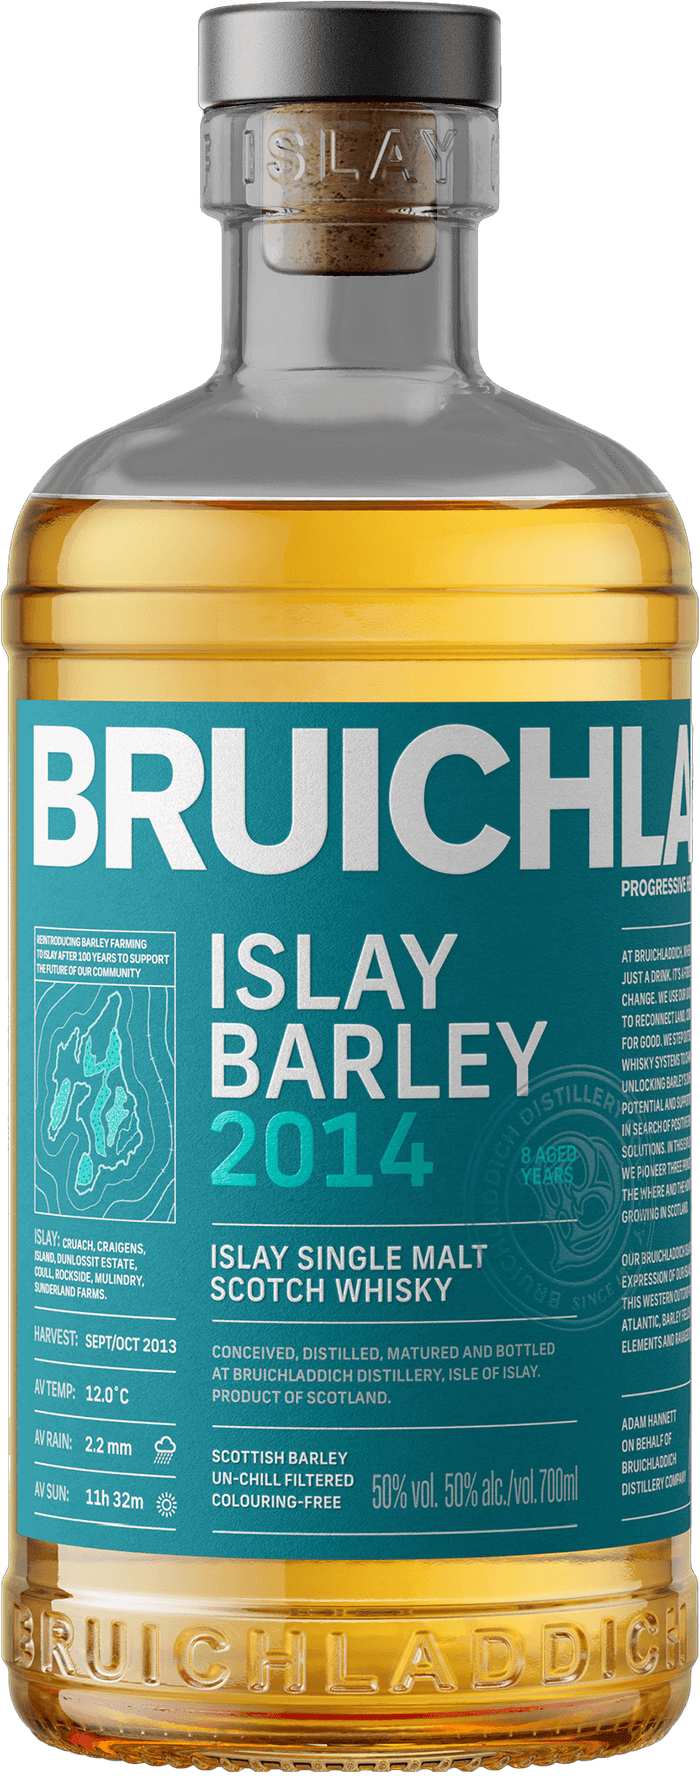 Bruichladdich Islay Barley 2014 8 Year Old Whisky | 700ML